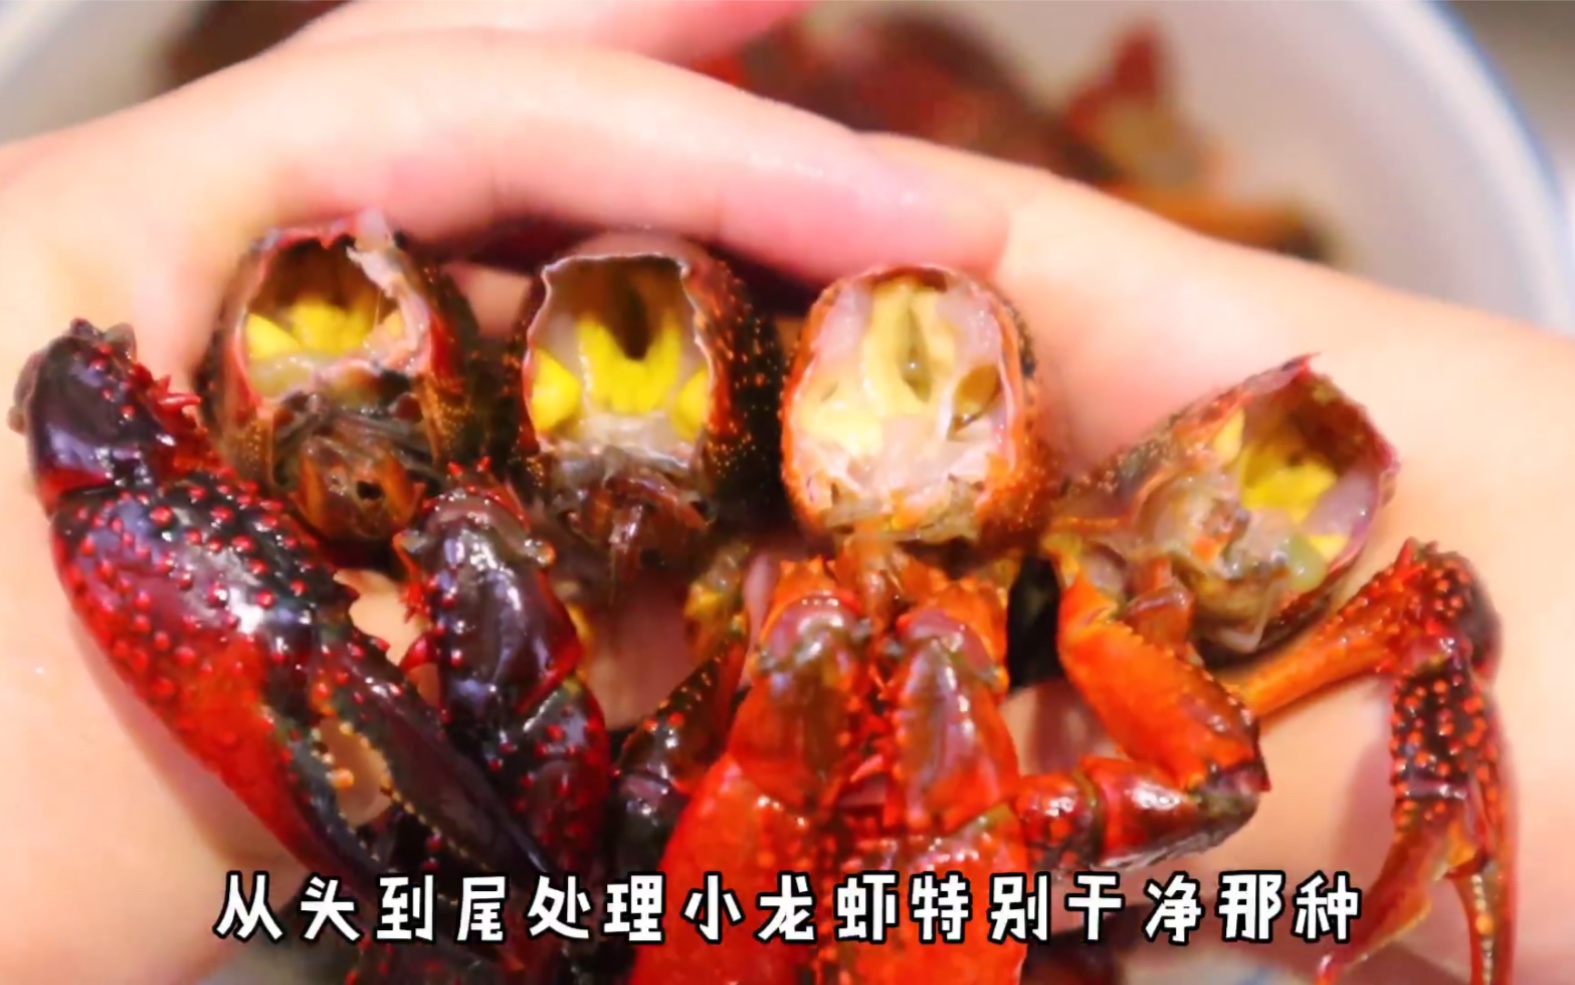 图解新式口味《泡菜小龙虾》的正宗做法 - 知乎